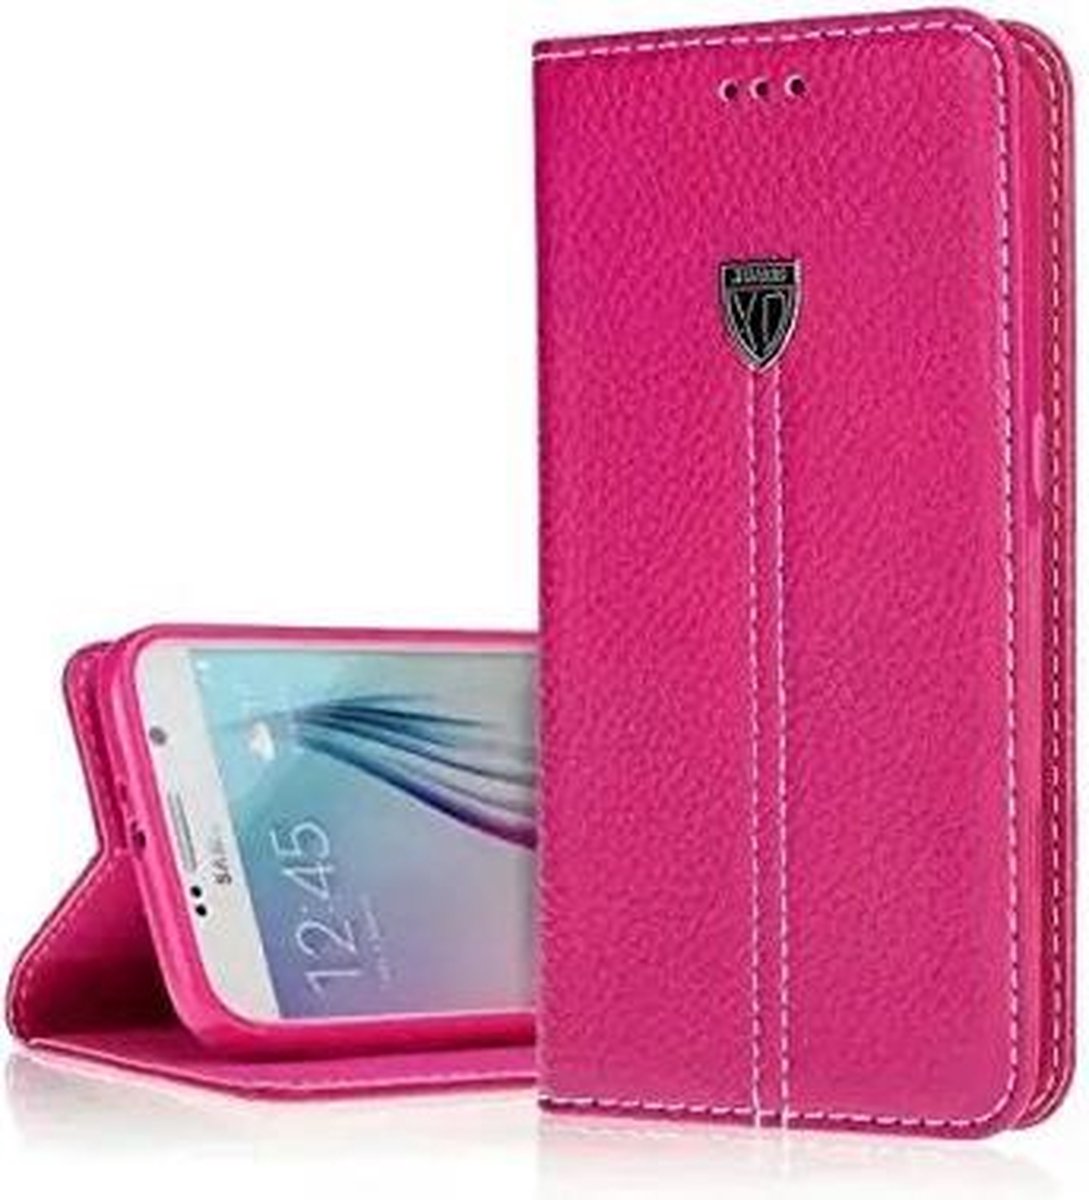 Xundd Fundas Echt Leer Case Cover Hoesje Voor iPhone 6 / 6S 4,7 Pink / Roze